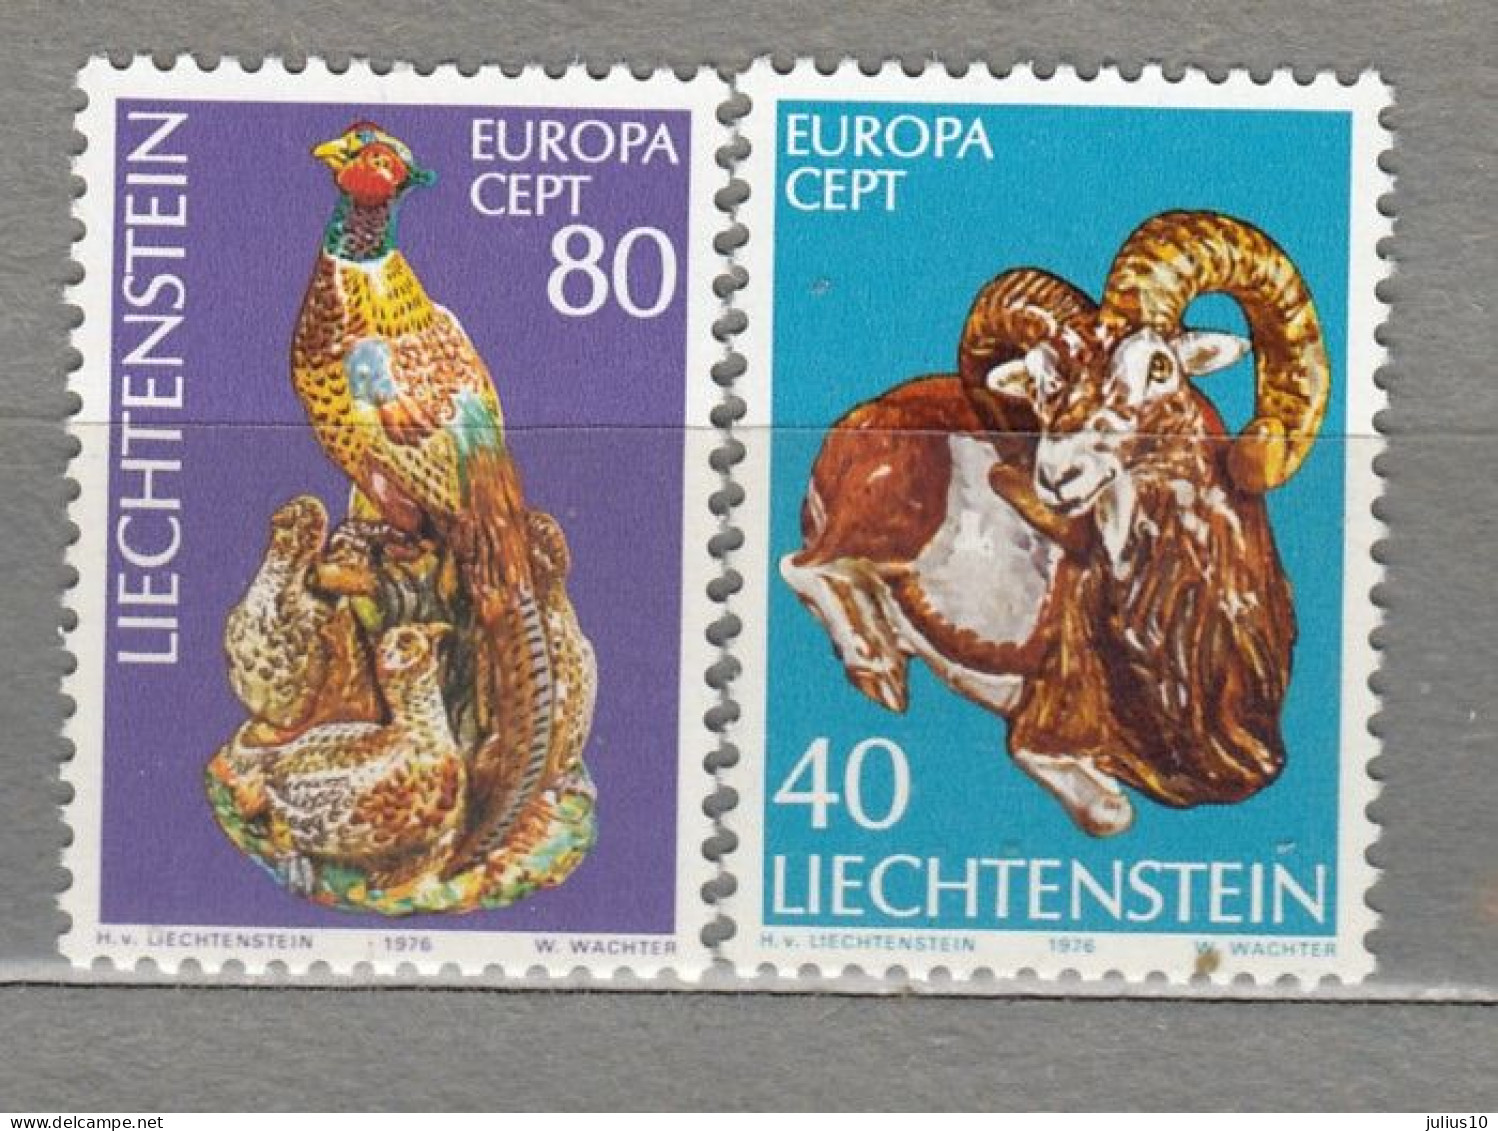 LIECHTENSTEIN 1976 Europa CEPT Art Mi 642-643 MNH(**) #34025 - Unused Stamps